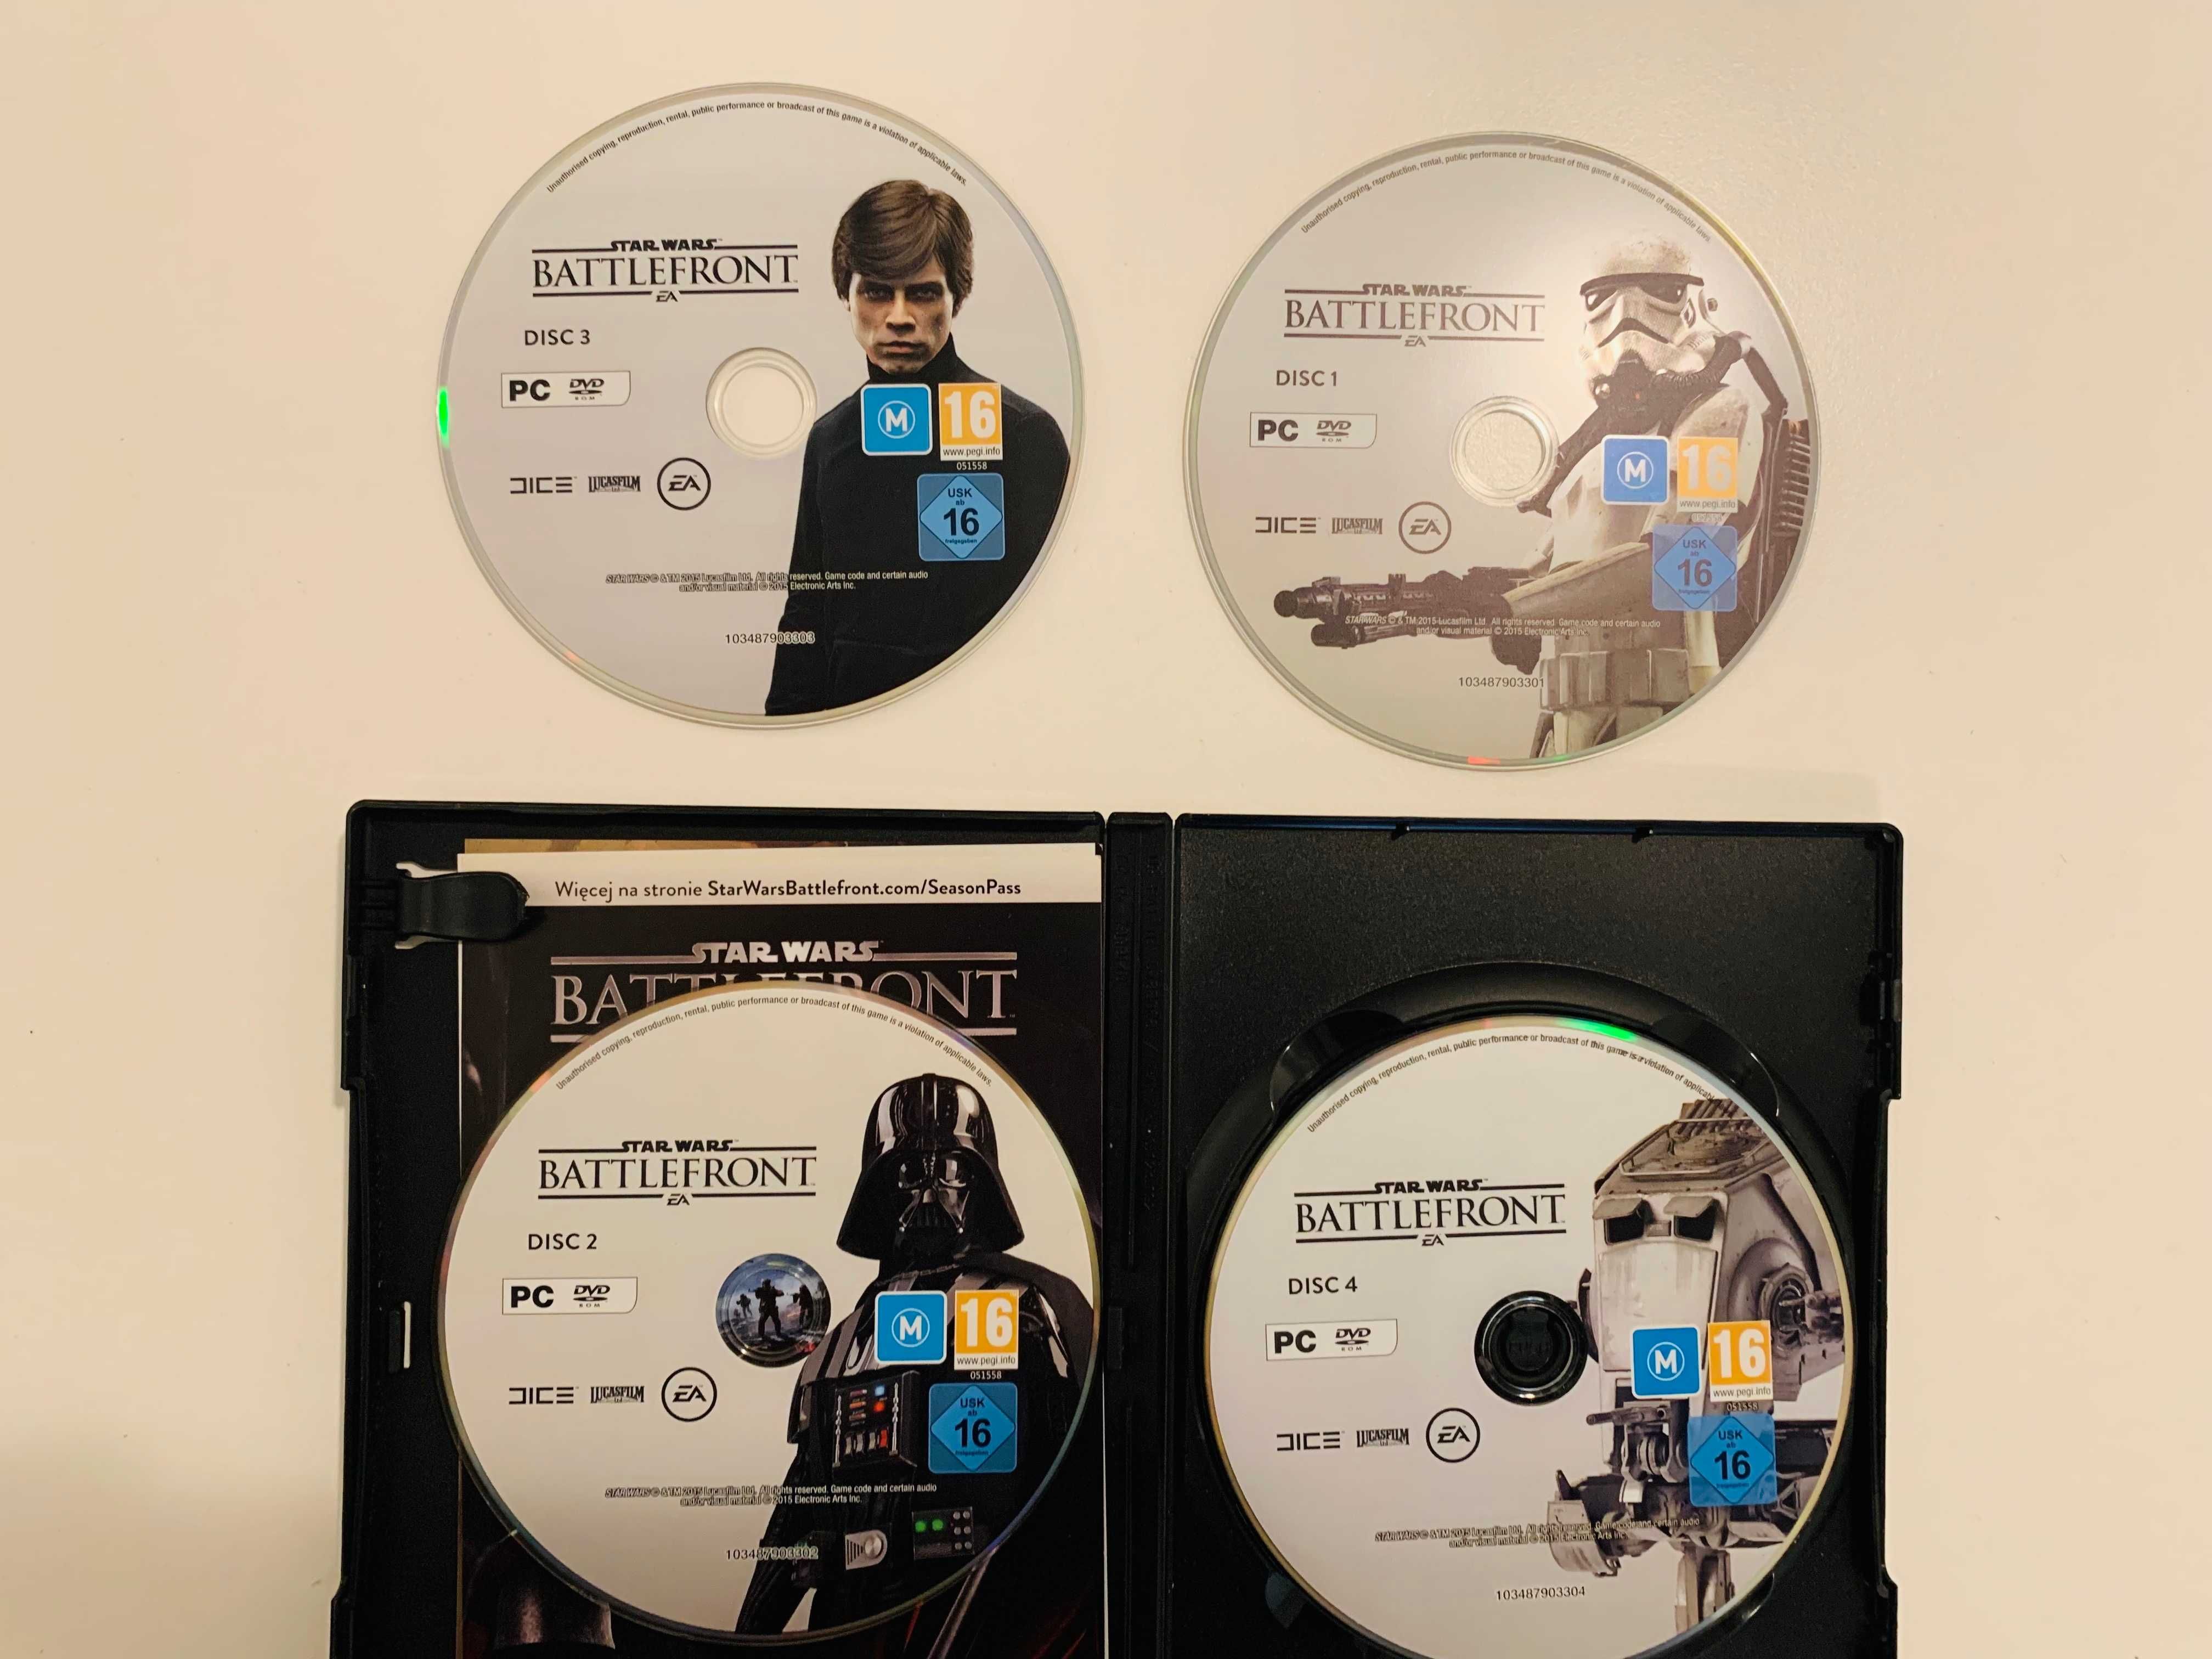 [???] - Star Wars - Battlefront - EA 4 CD